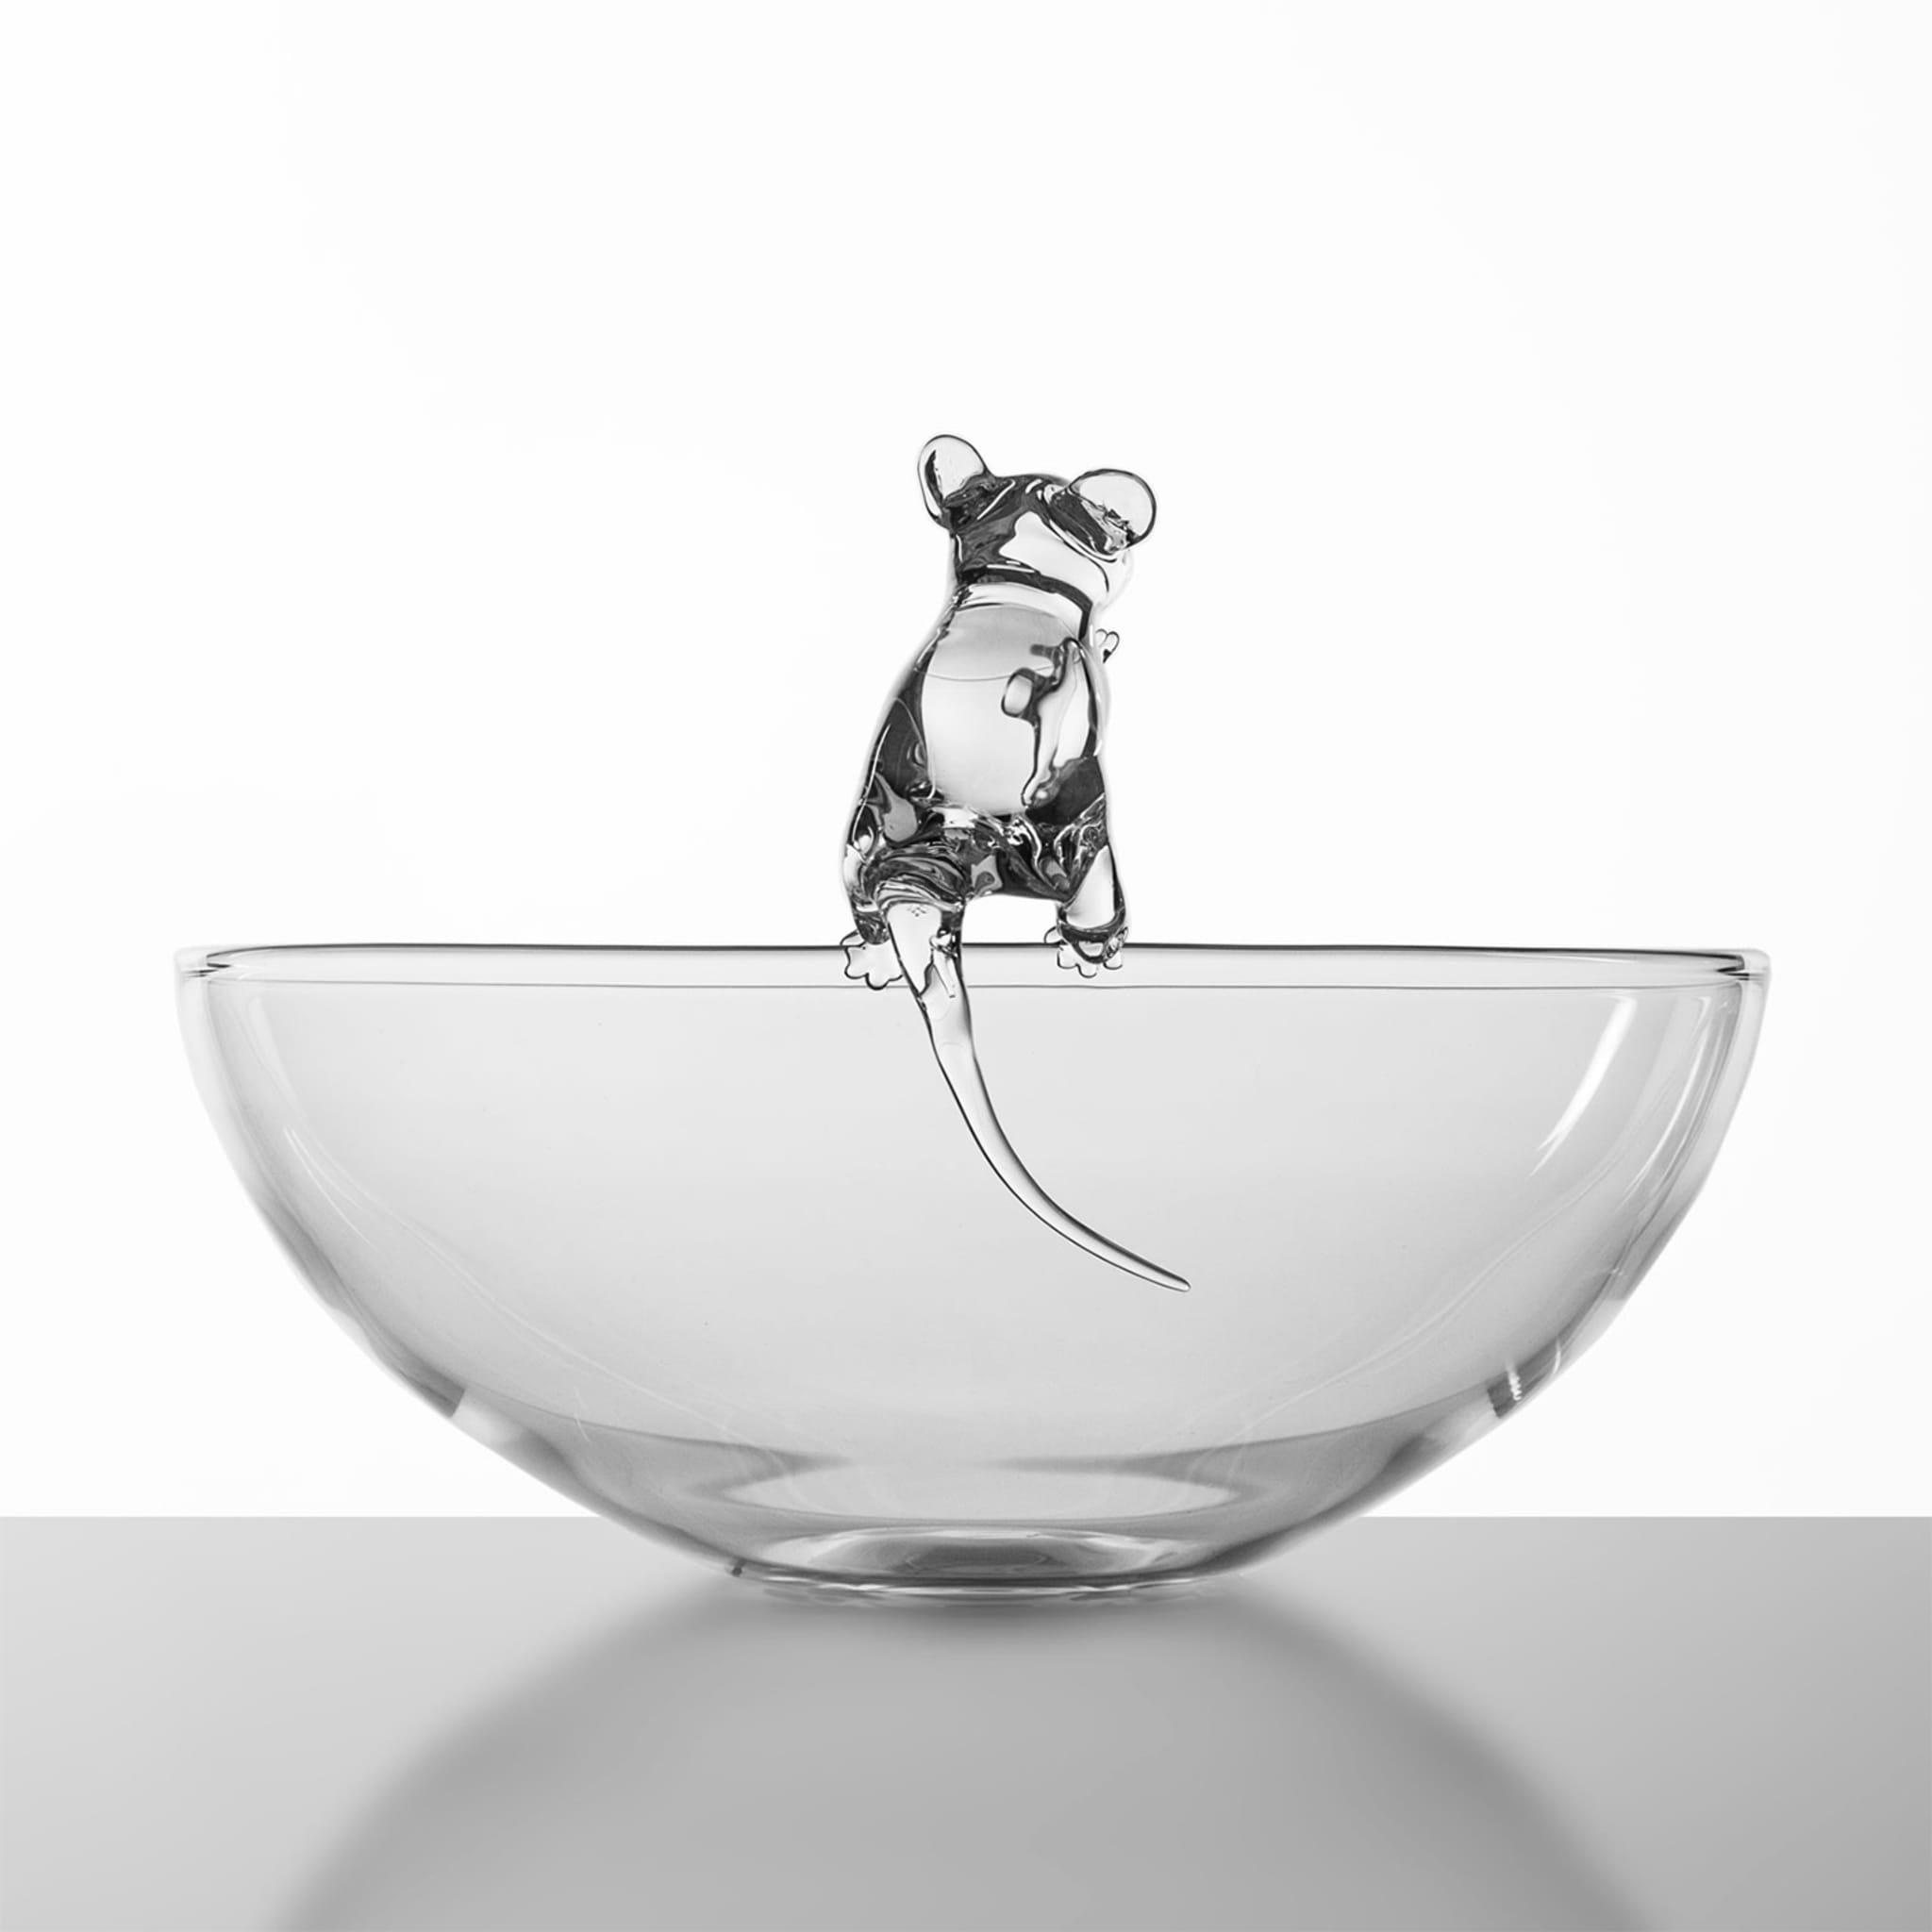 Little Mouse #01 Decorative Bowl - Alternative view 1